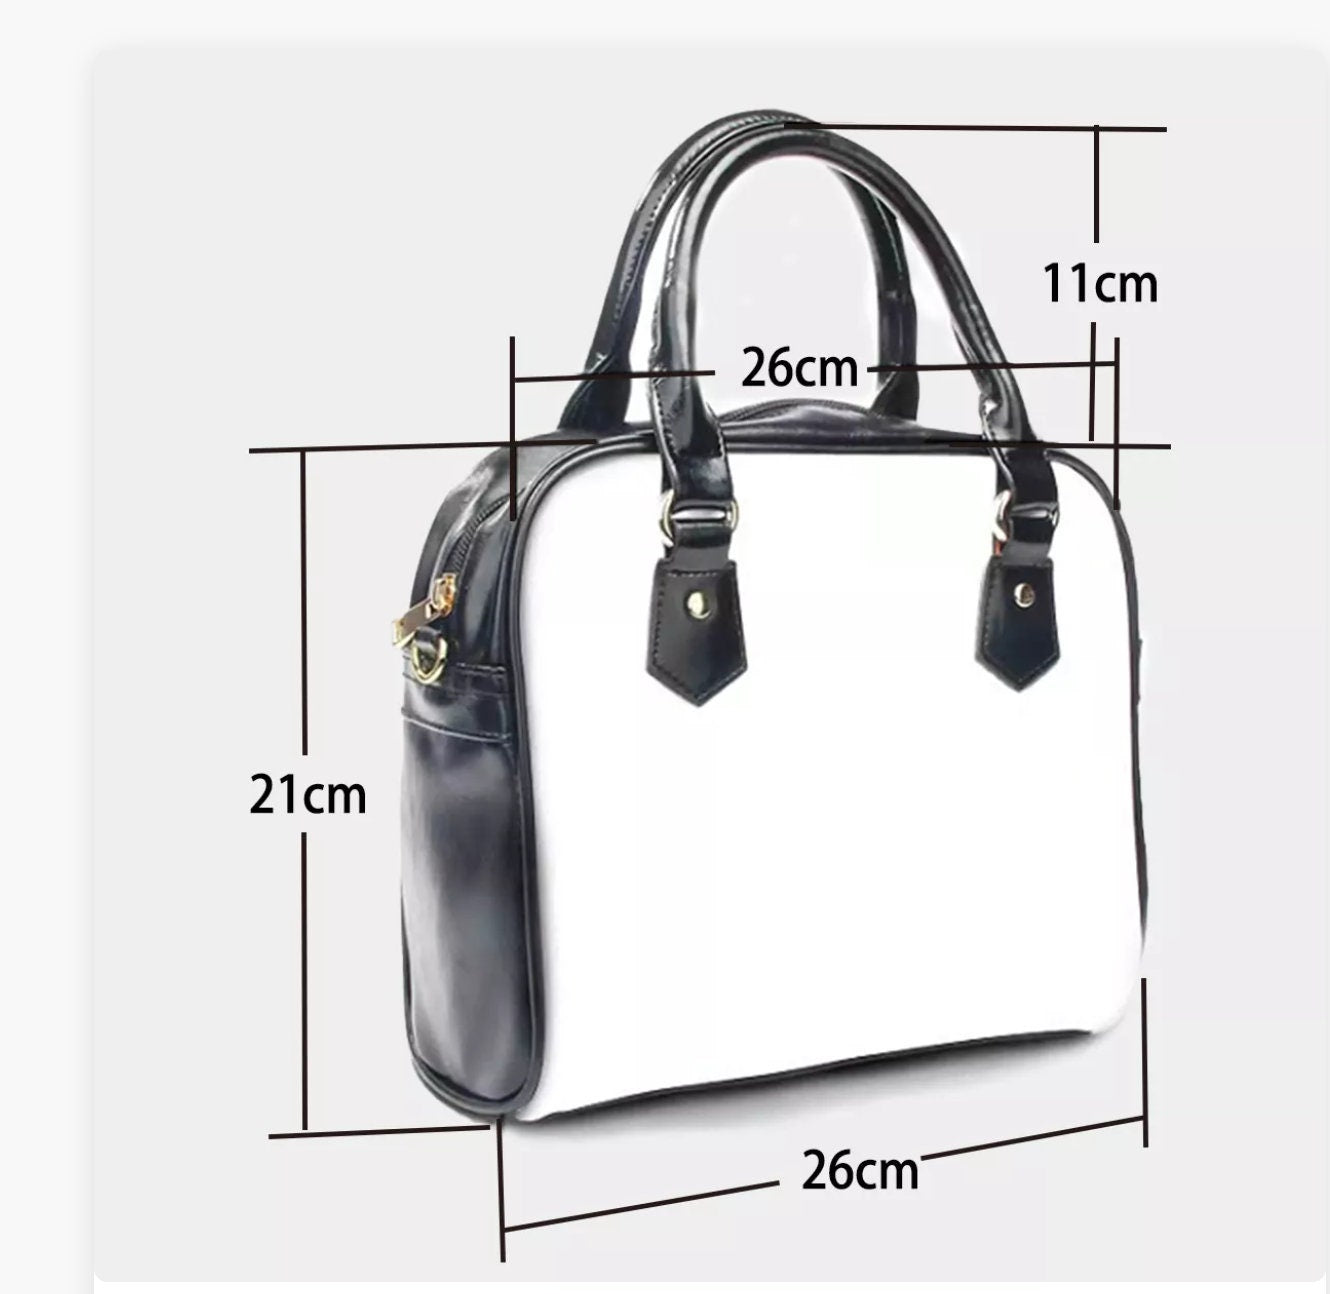 Geometric Handbag, Retro Handbags, Green Black Geometric Print Handbag,High Fashion Handbag, Womens Purses,Unique Handbag,Geometric Purse